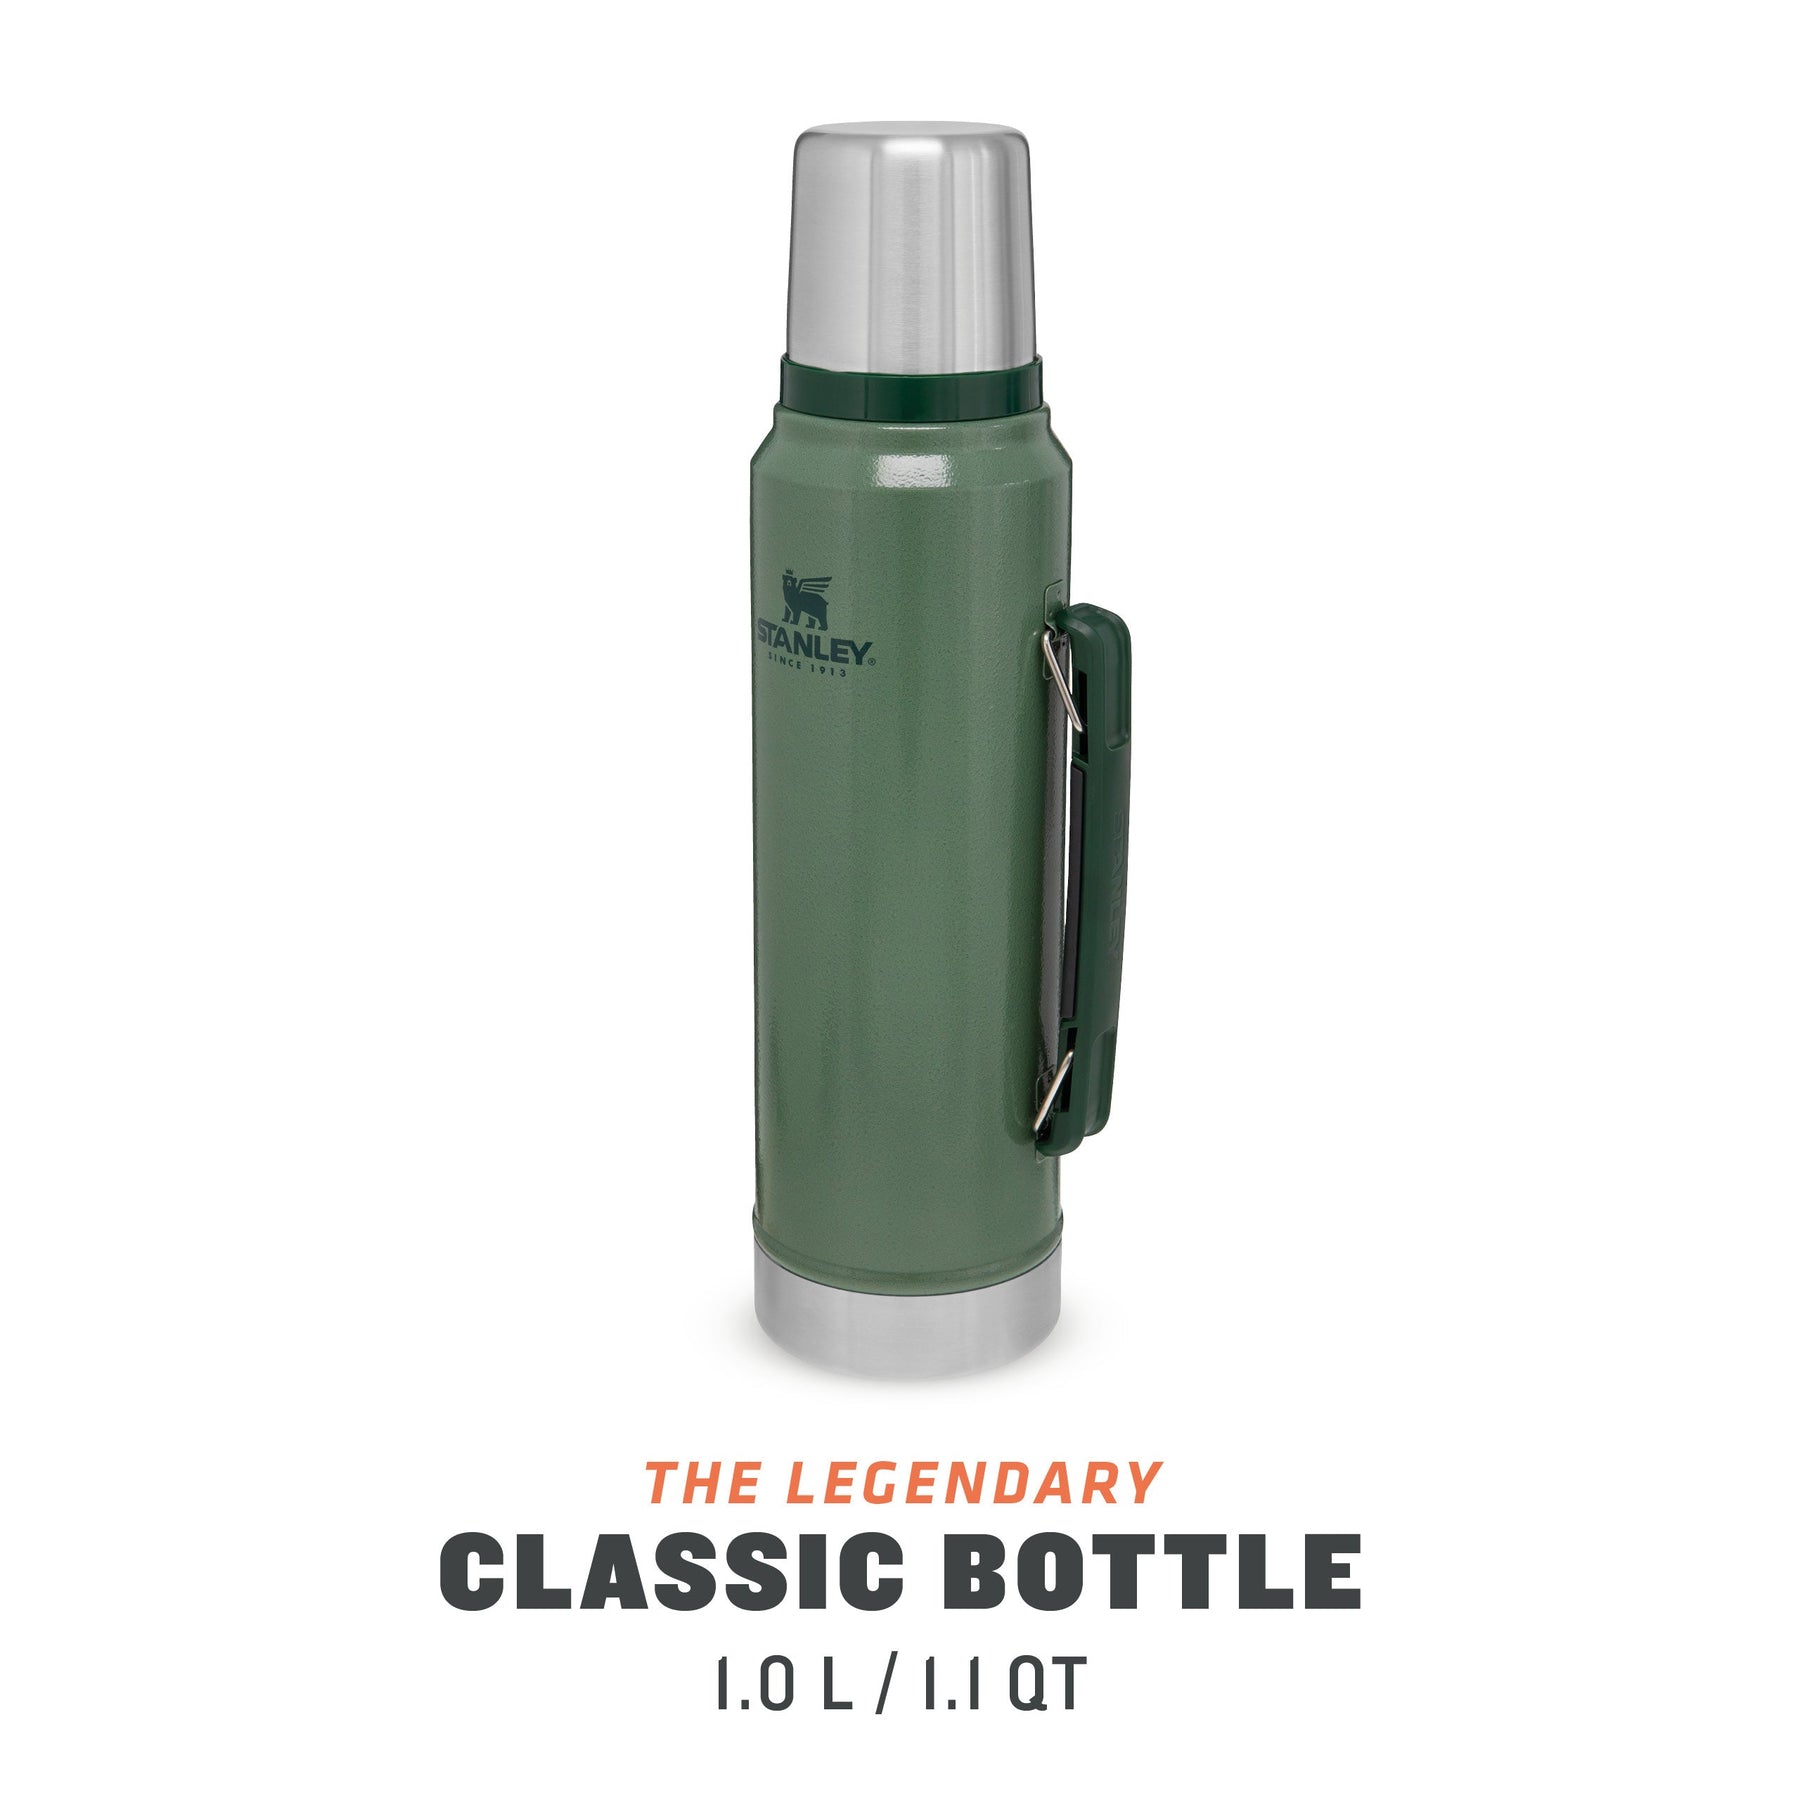 Stanley Legendary Classic Bottle 2.5 QT Hammertone Green